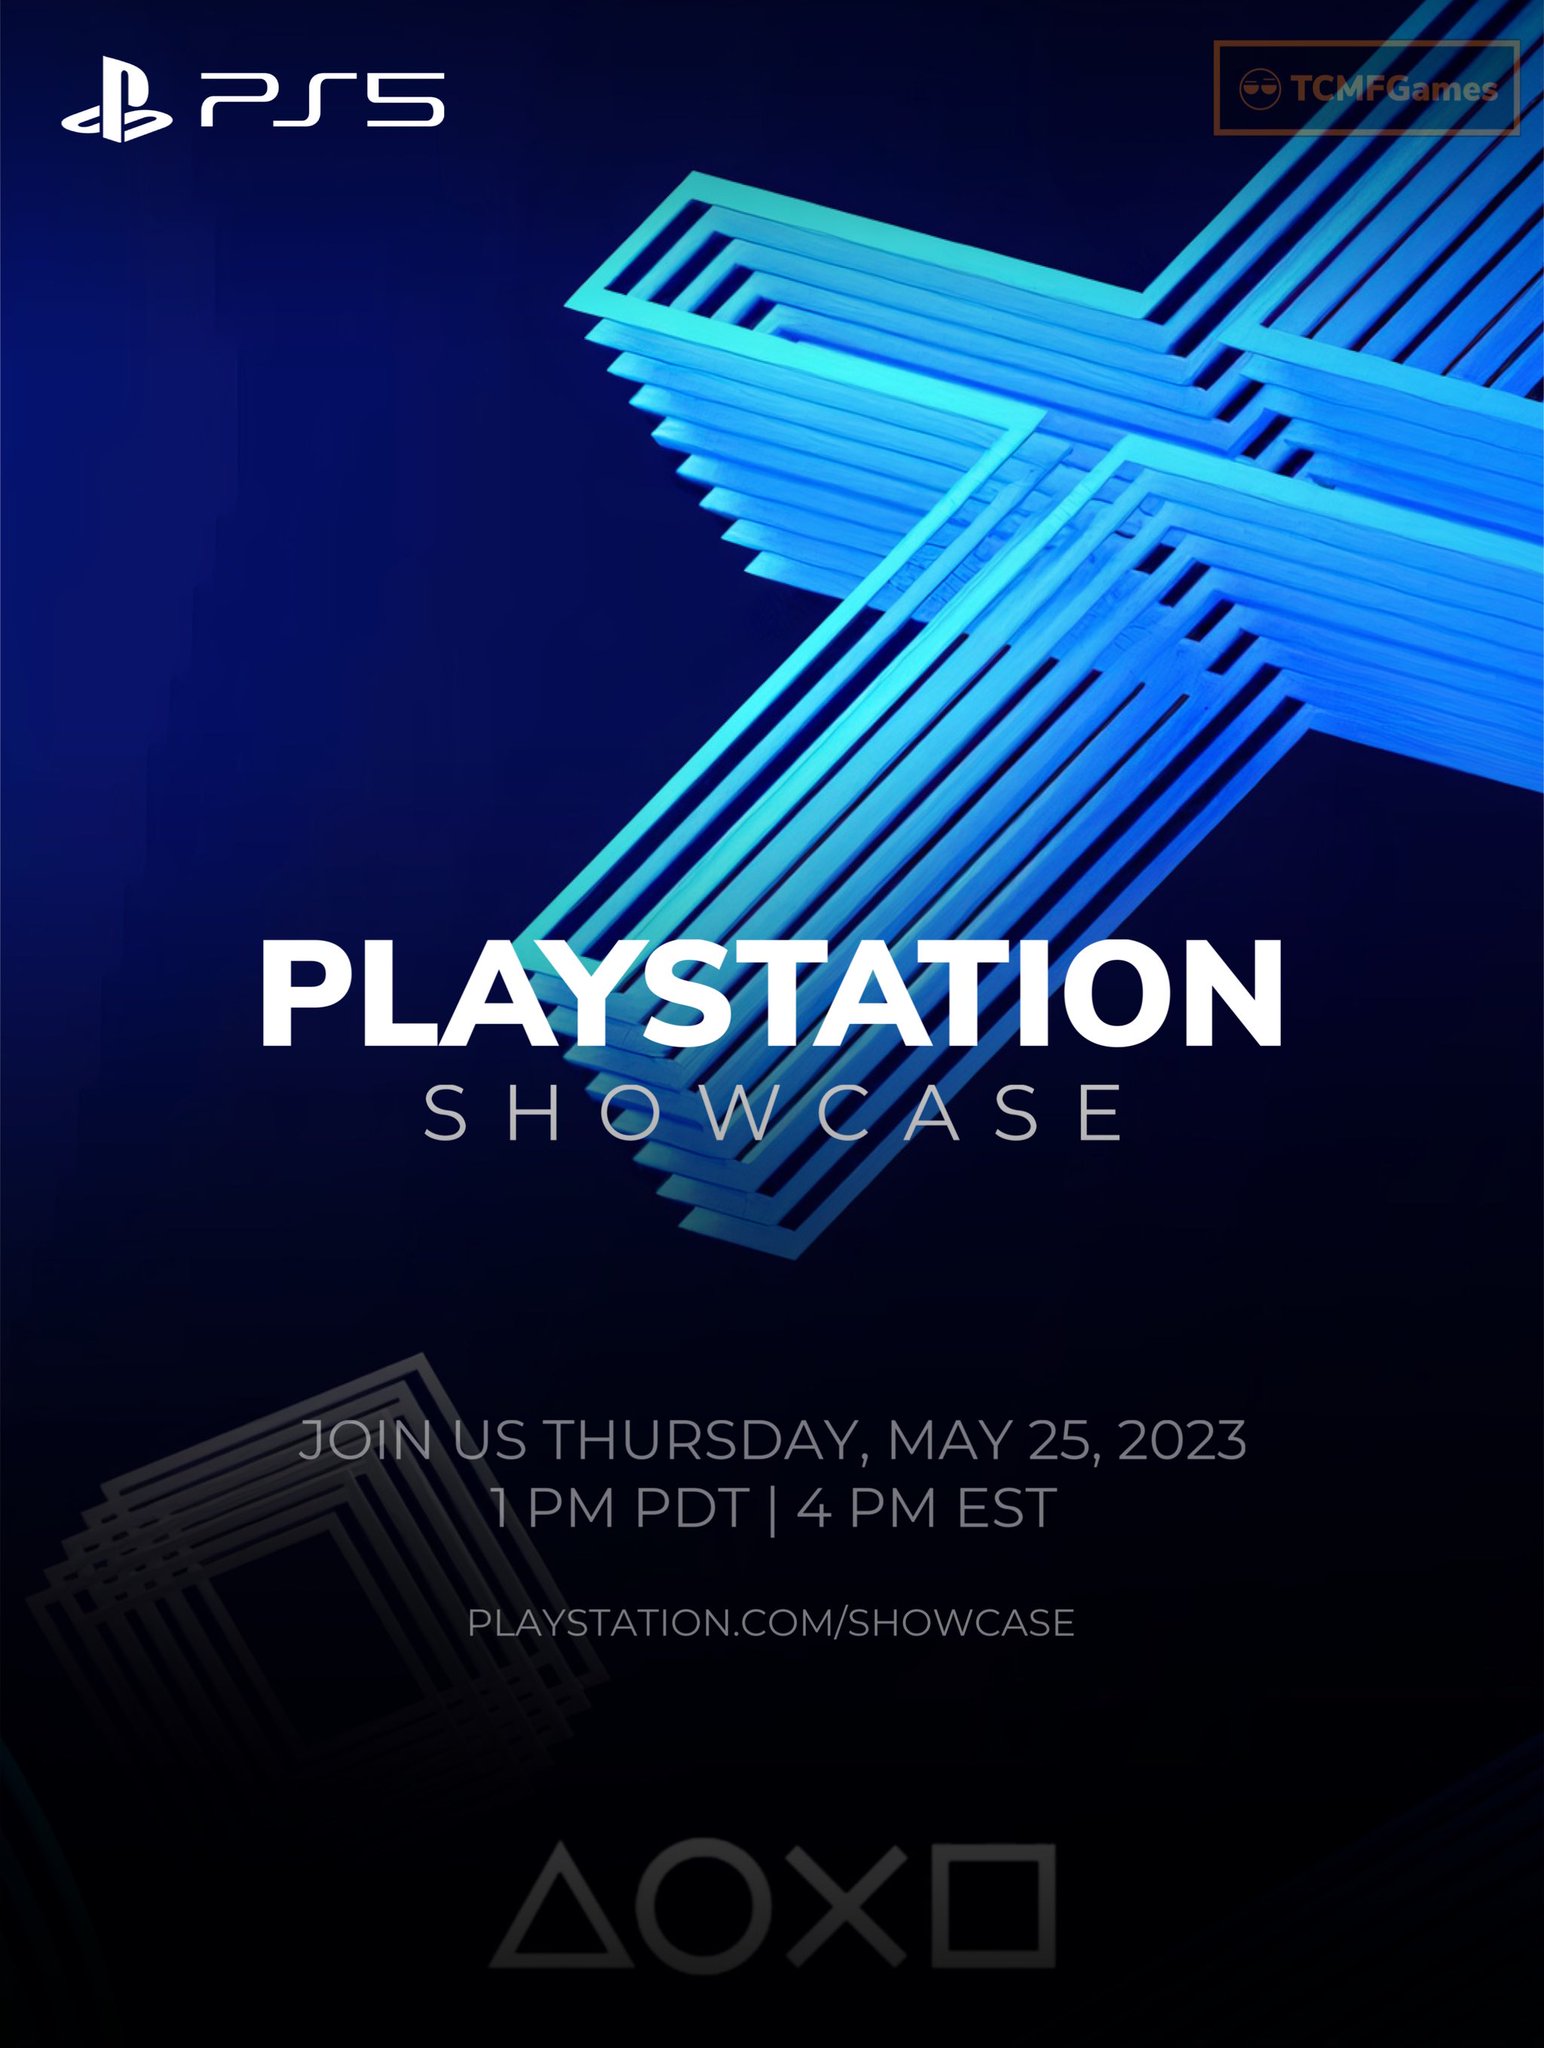 PlayStation Showcase Next Week  Game Mess Mornings 05/17/23 